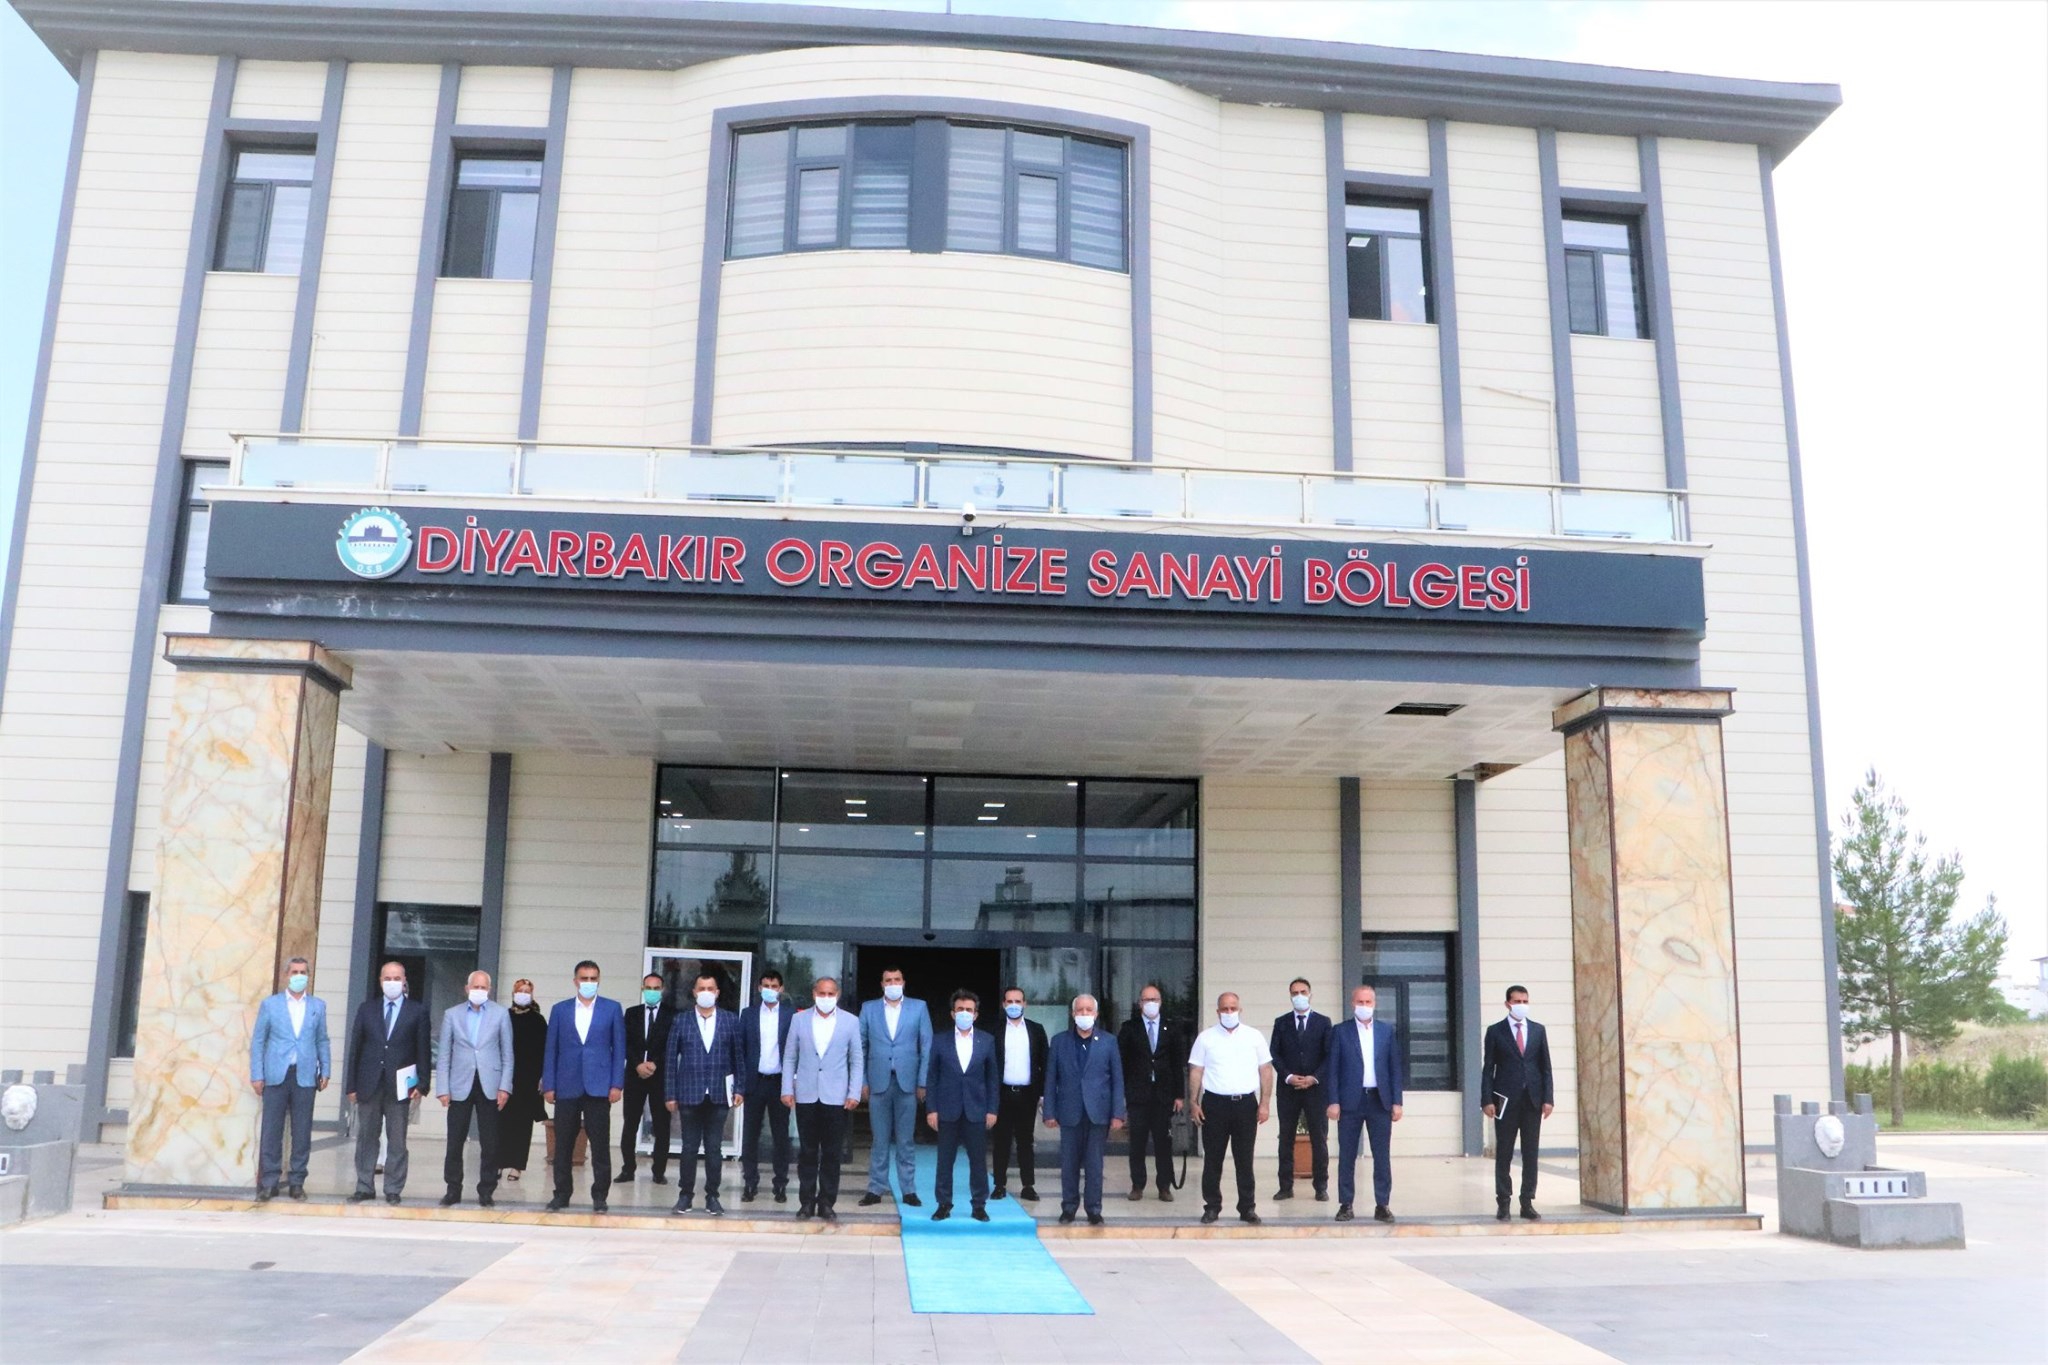 Sayın Vali'mizin Başkanlığında Diyarbakır Organize Sanayi Bölgesi Müteşebbis Heyeti toplantısı Yapıldı.